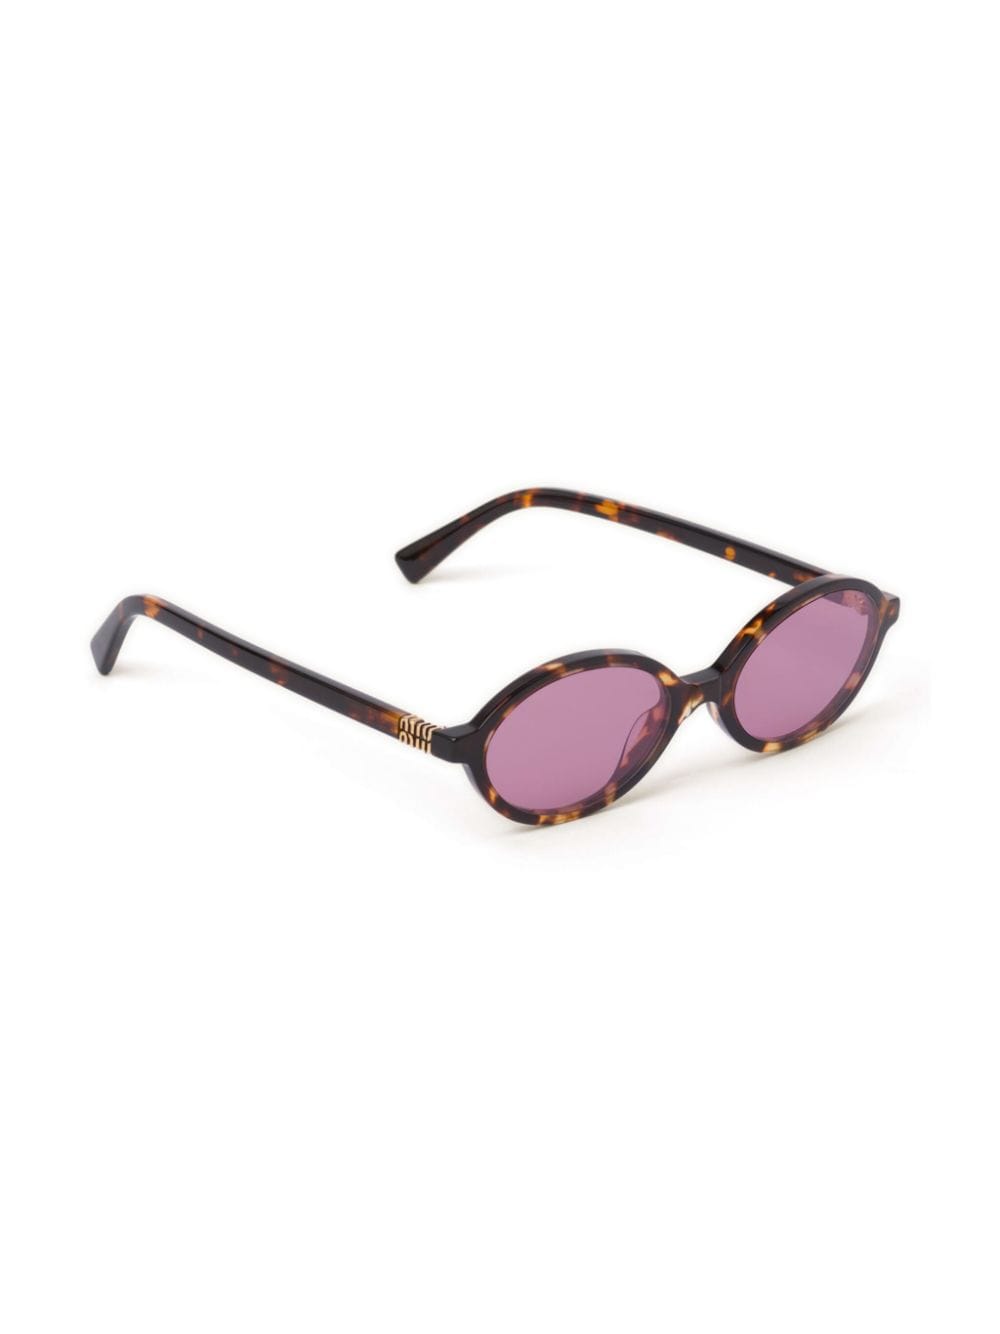 Miu Miu Eyewear Regard zonnebril met schildpadschild-design - Bruin